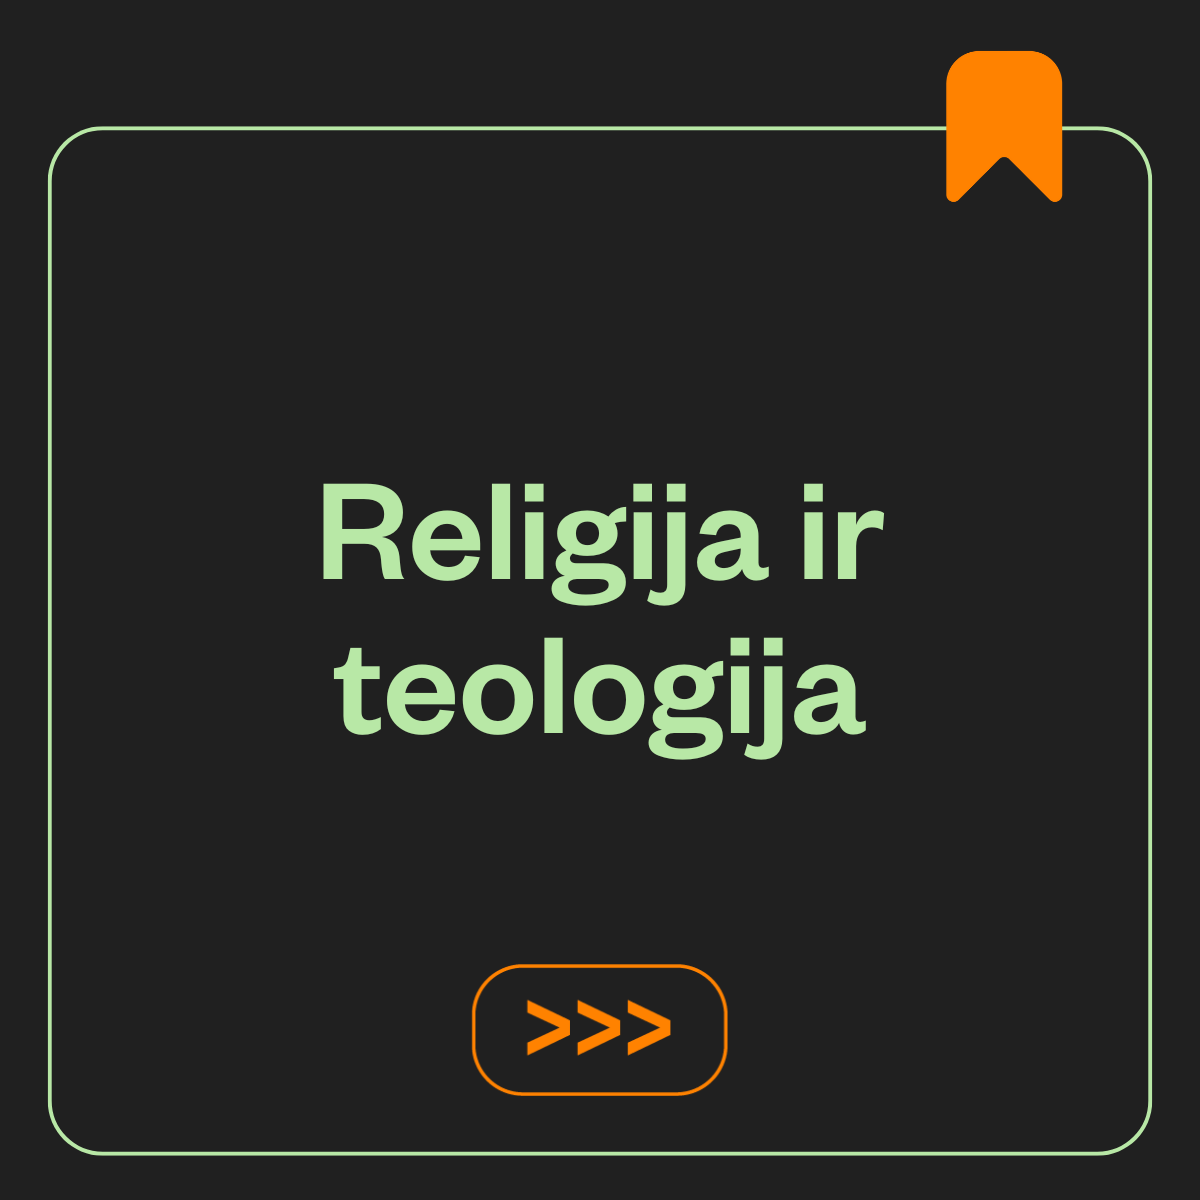 Religija ir teologija